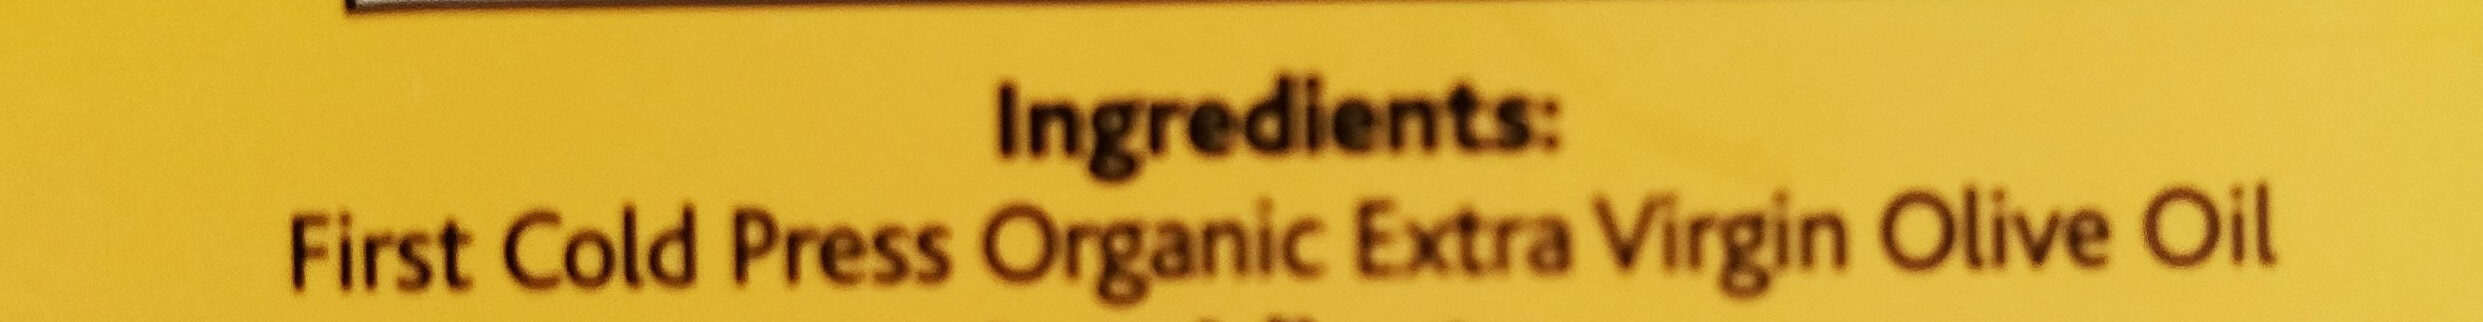 Extra virgin olive oil - Ingredients - en